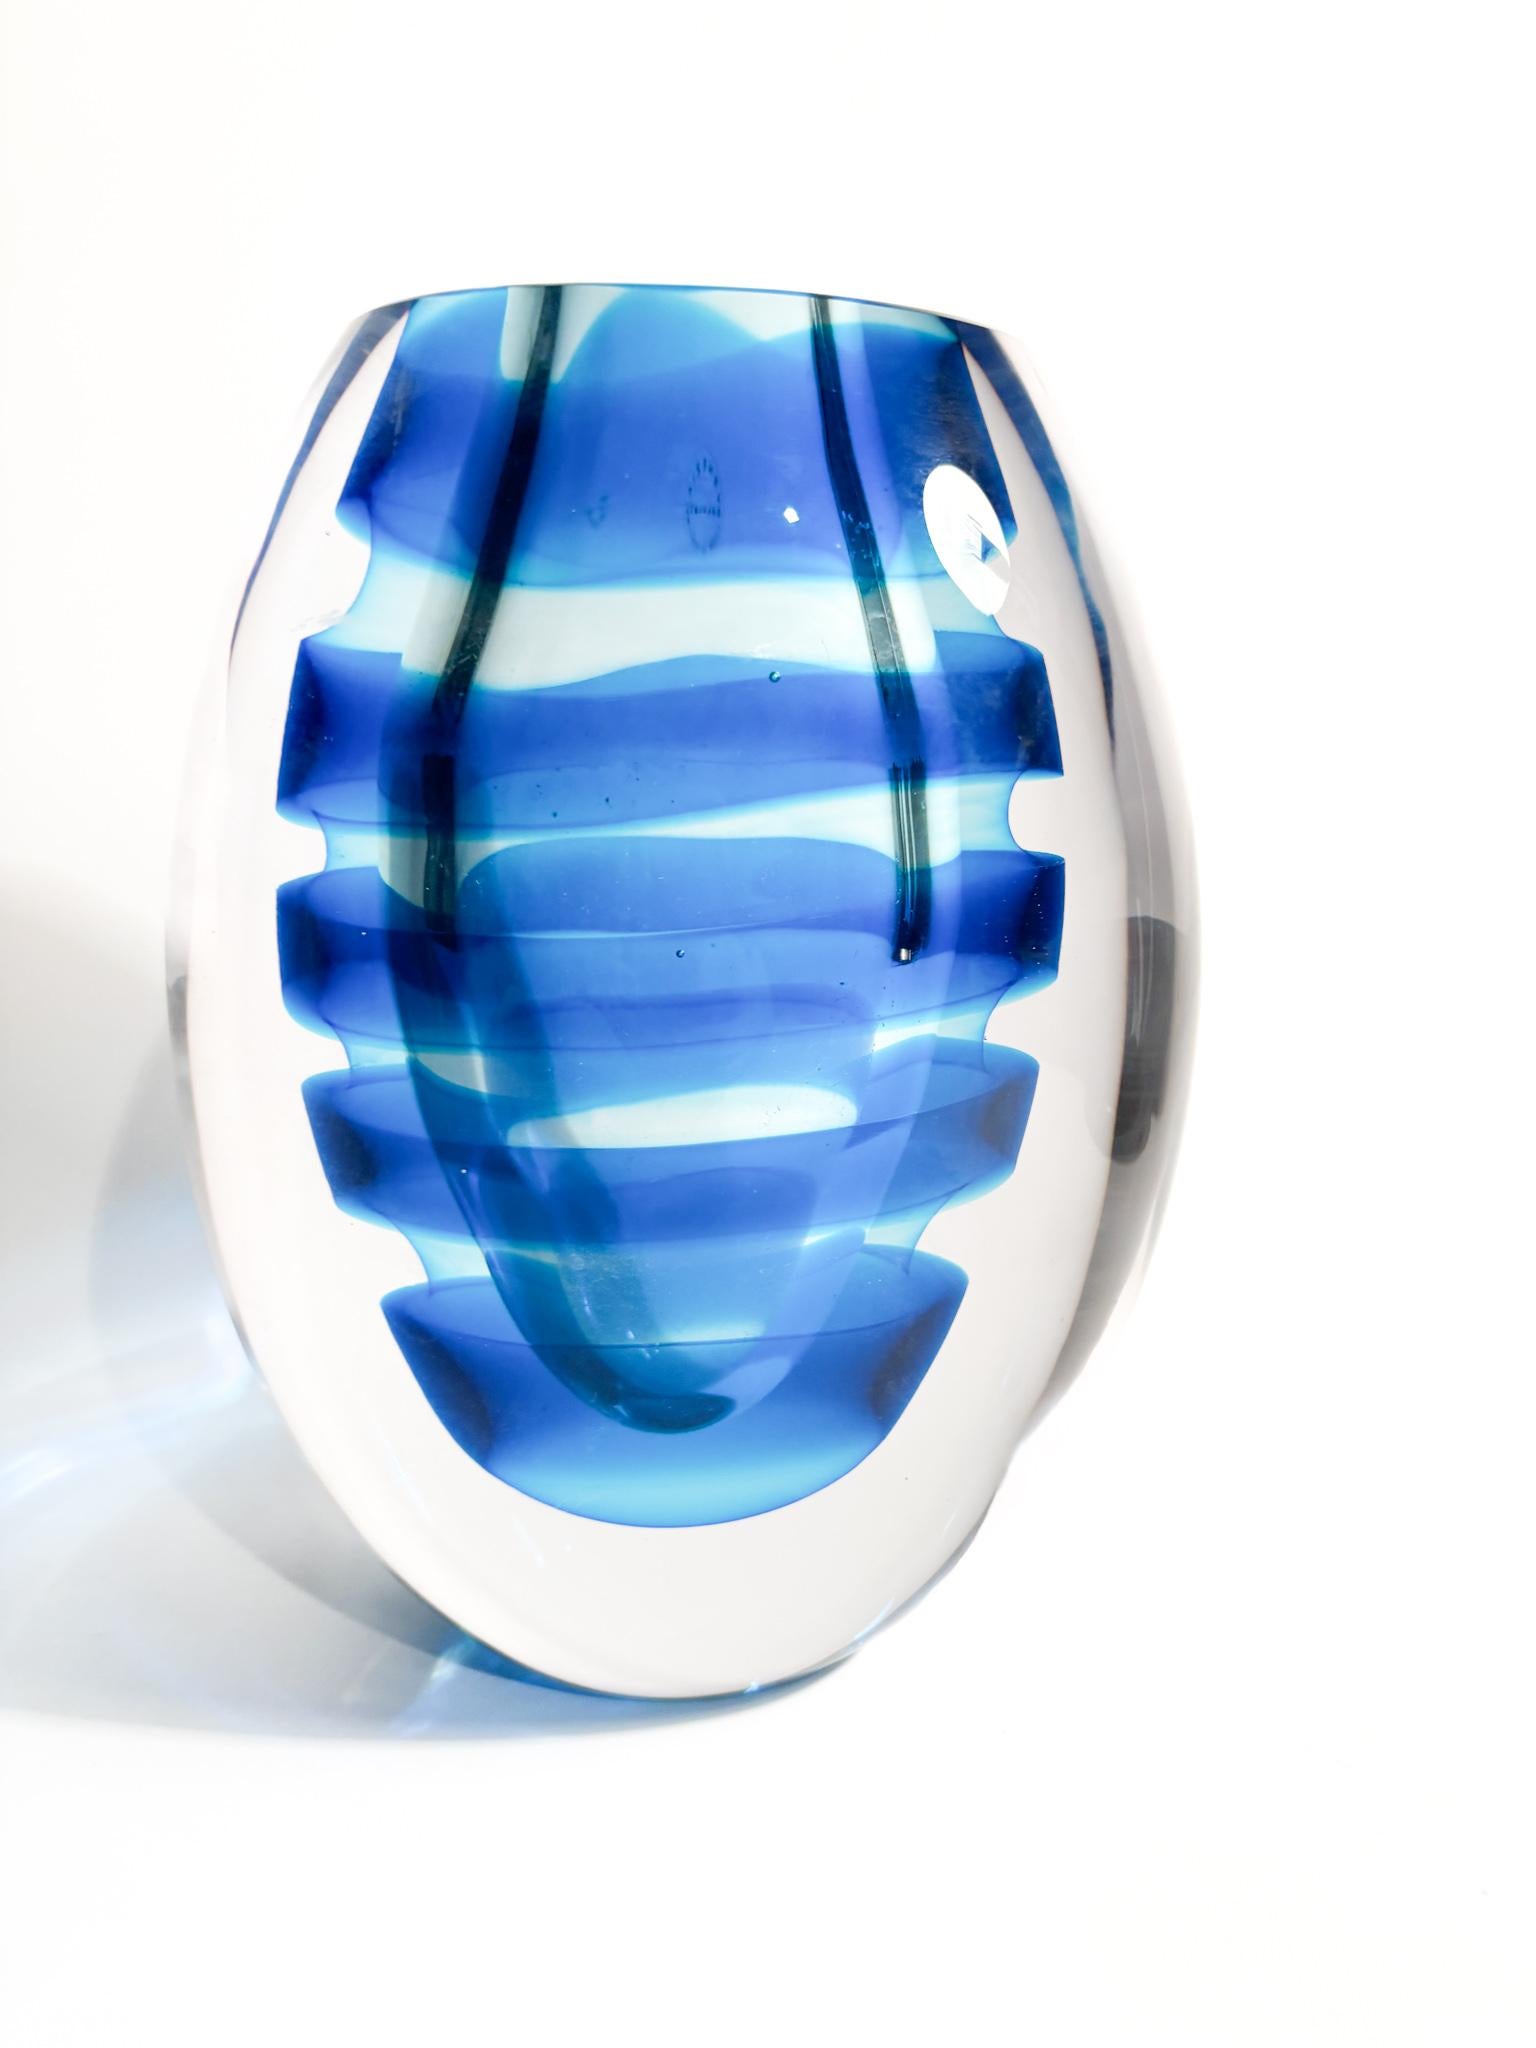 Vase elliptique en verre de Murano submergé de spirales bleues, réalisé par Salviati en 2003.

Ø 17 cm Ø 12 cm h 21 cm

Salviati est un prestigieux fabricant de verre basé à Murano, à Venise, en Italie. Fondée en 1859, elle est l'un des noms les